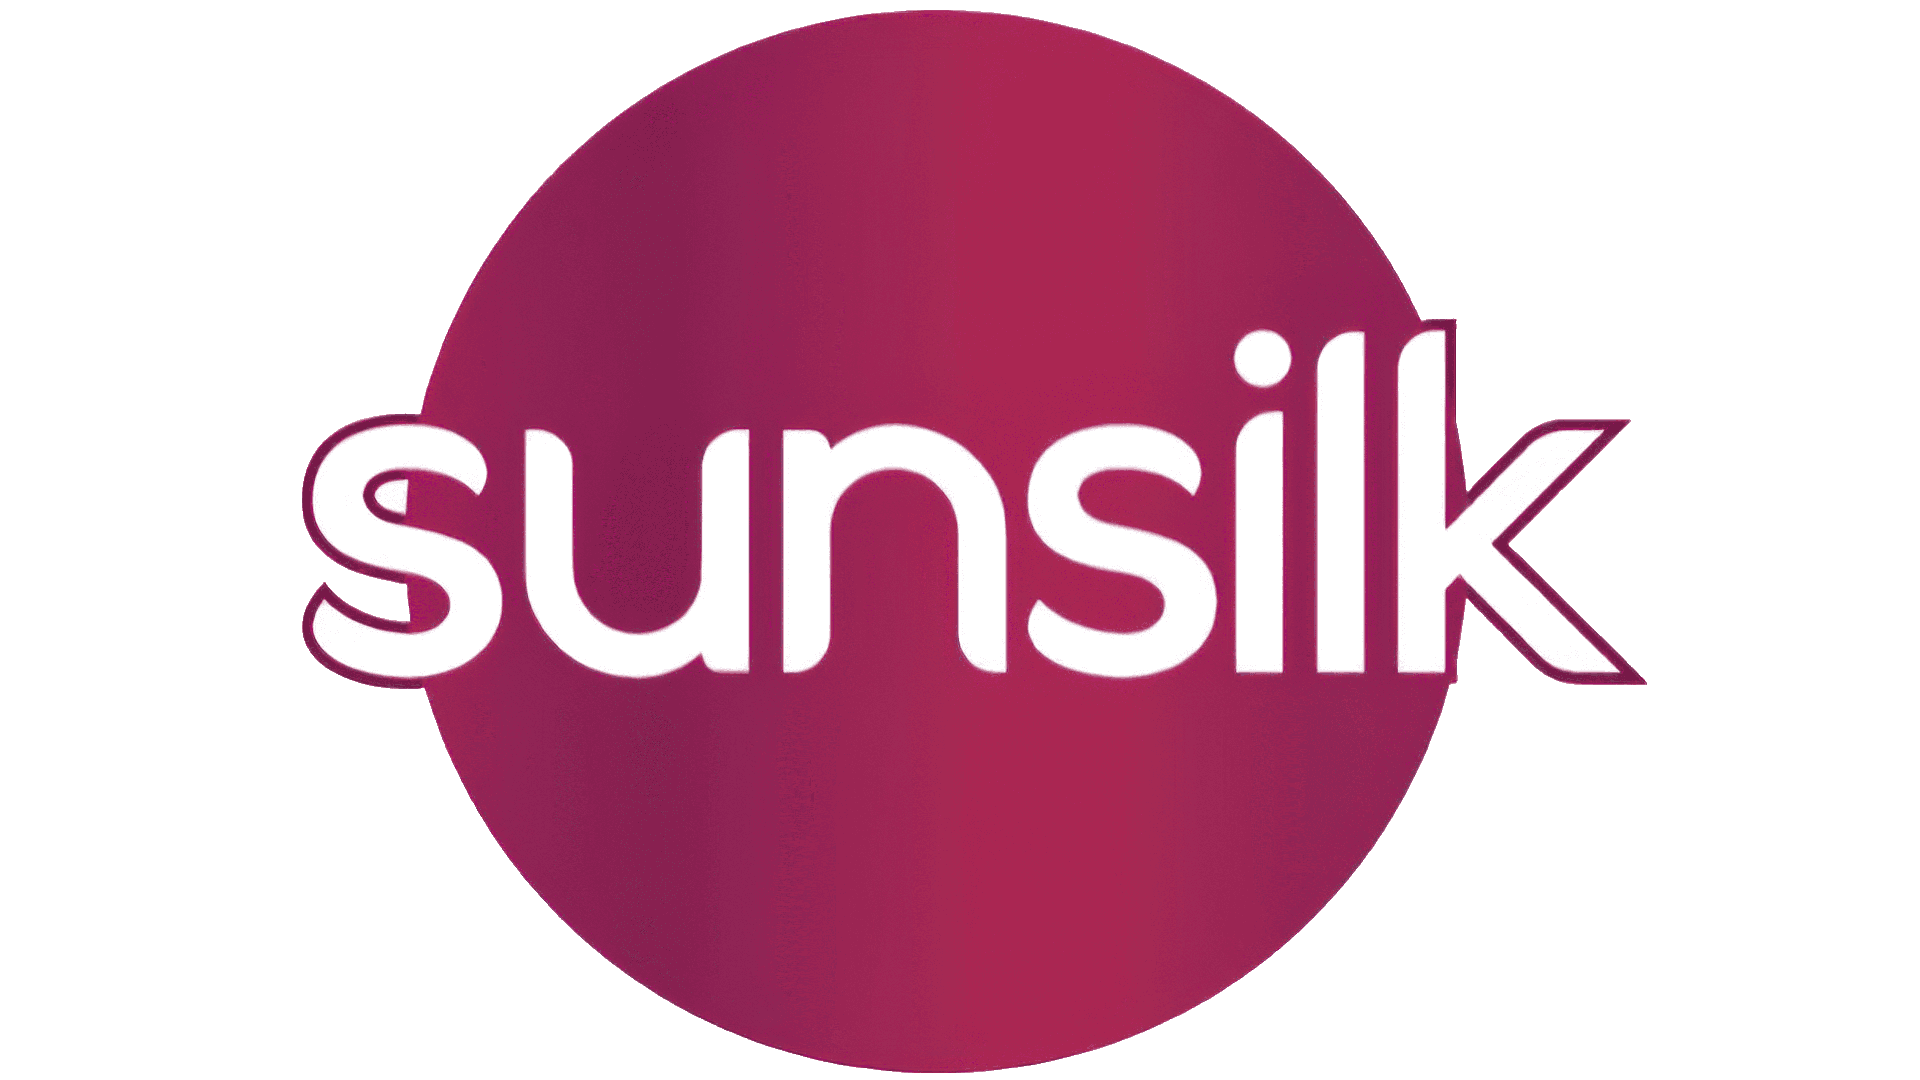 Brand: Sunsilk